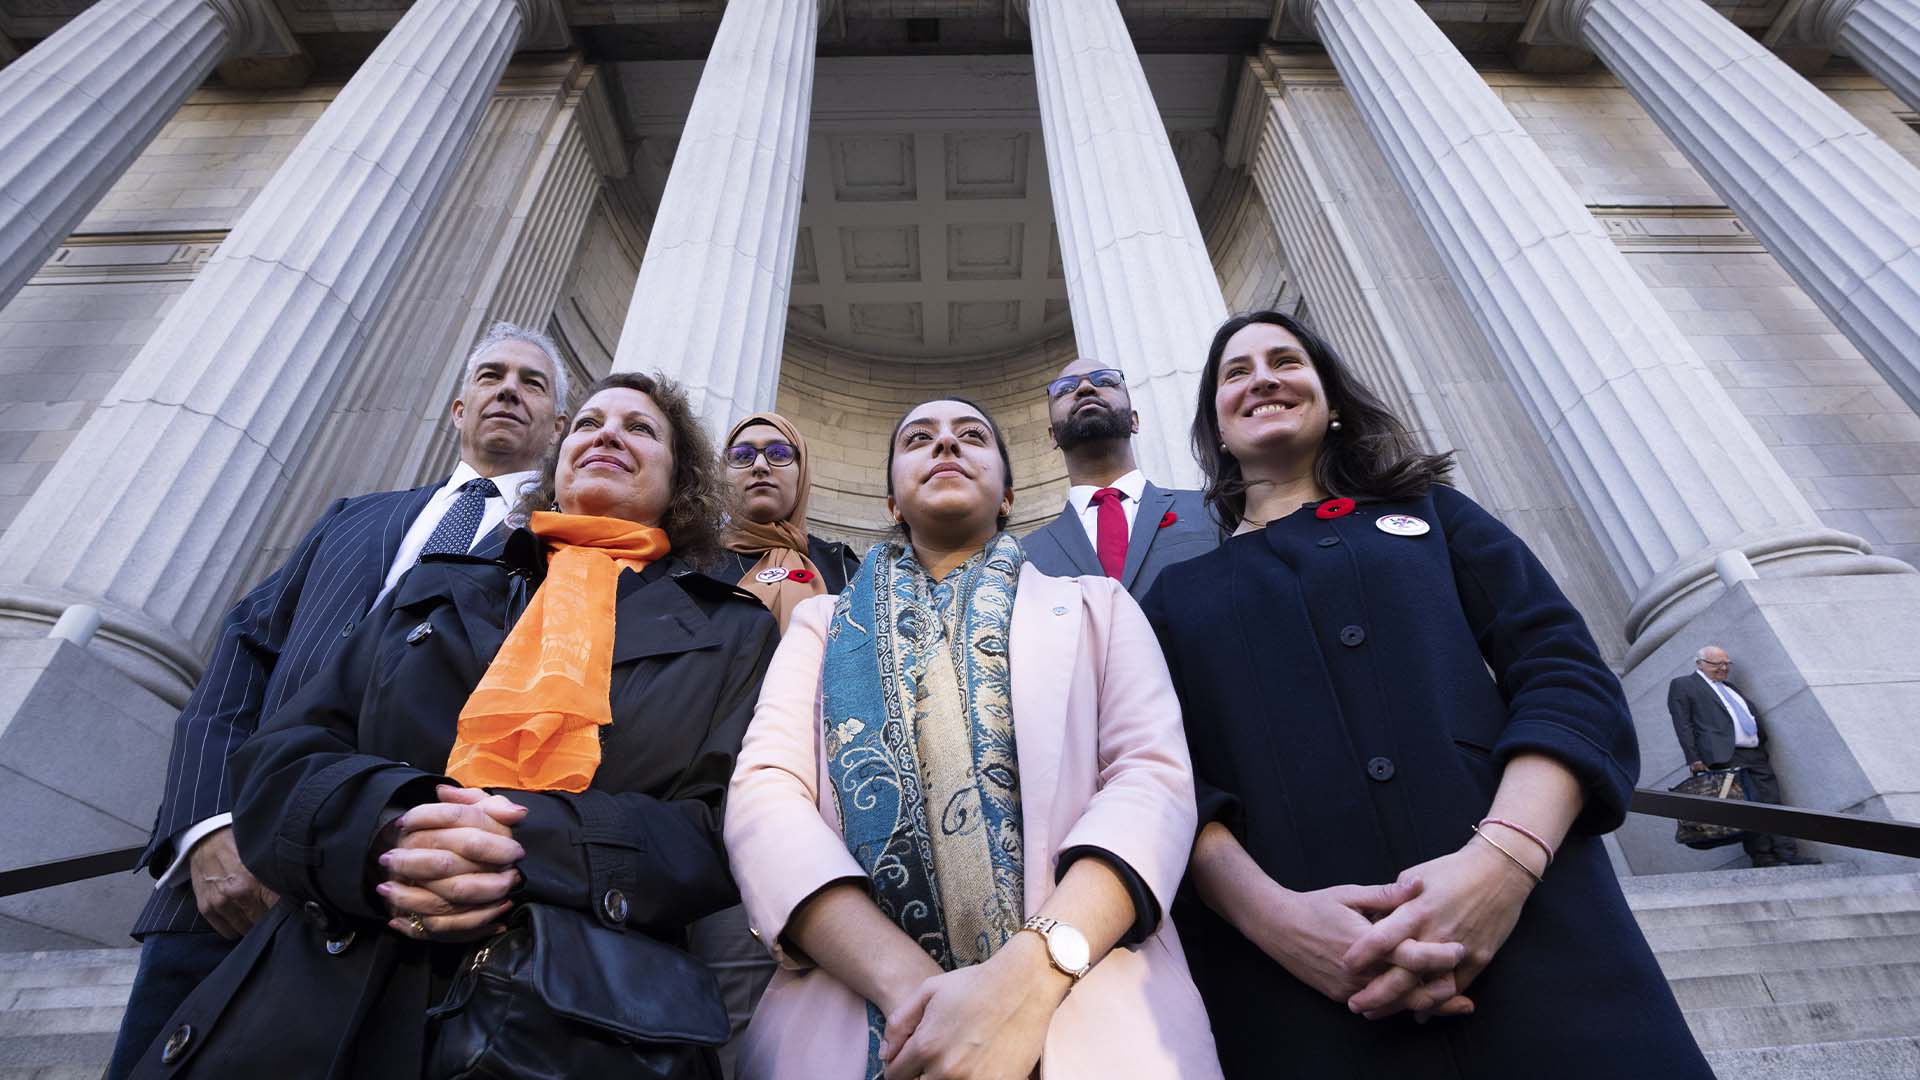 Les dirigeants communautaires Frank Baylis, la révérende Diane Rollert, inconnue, Harginder Kaur, Stephen Brown et Laura Berger, de gauche à droite, se tiennent à l'extérieur de la Cour d'appel lors de la première journée d'audiences sur l'appel du projet de loi 21 à Montréal, le lundi 7 novembre 2022. 